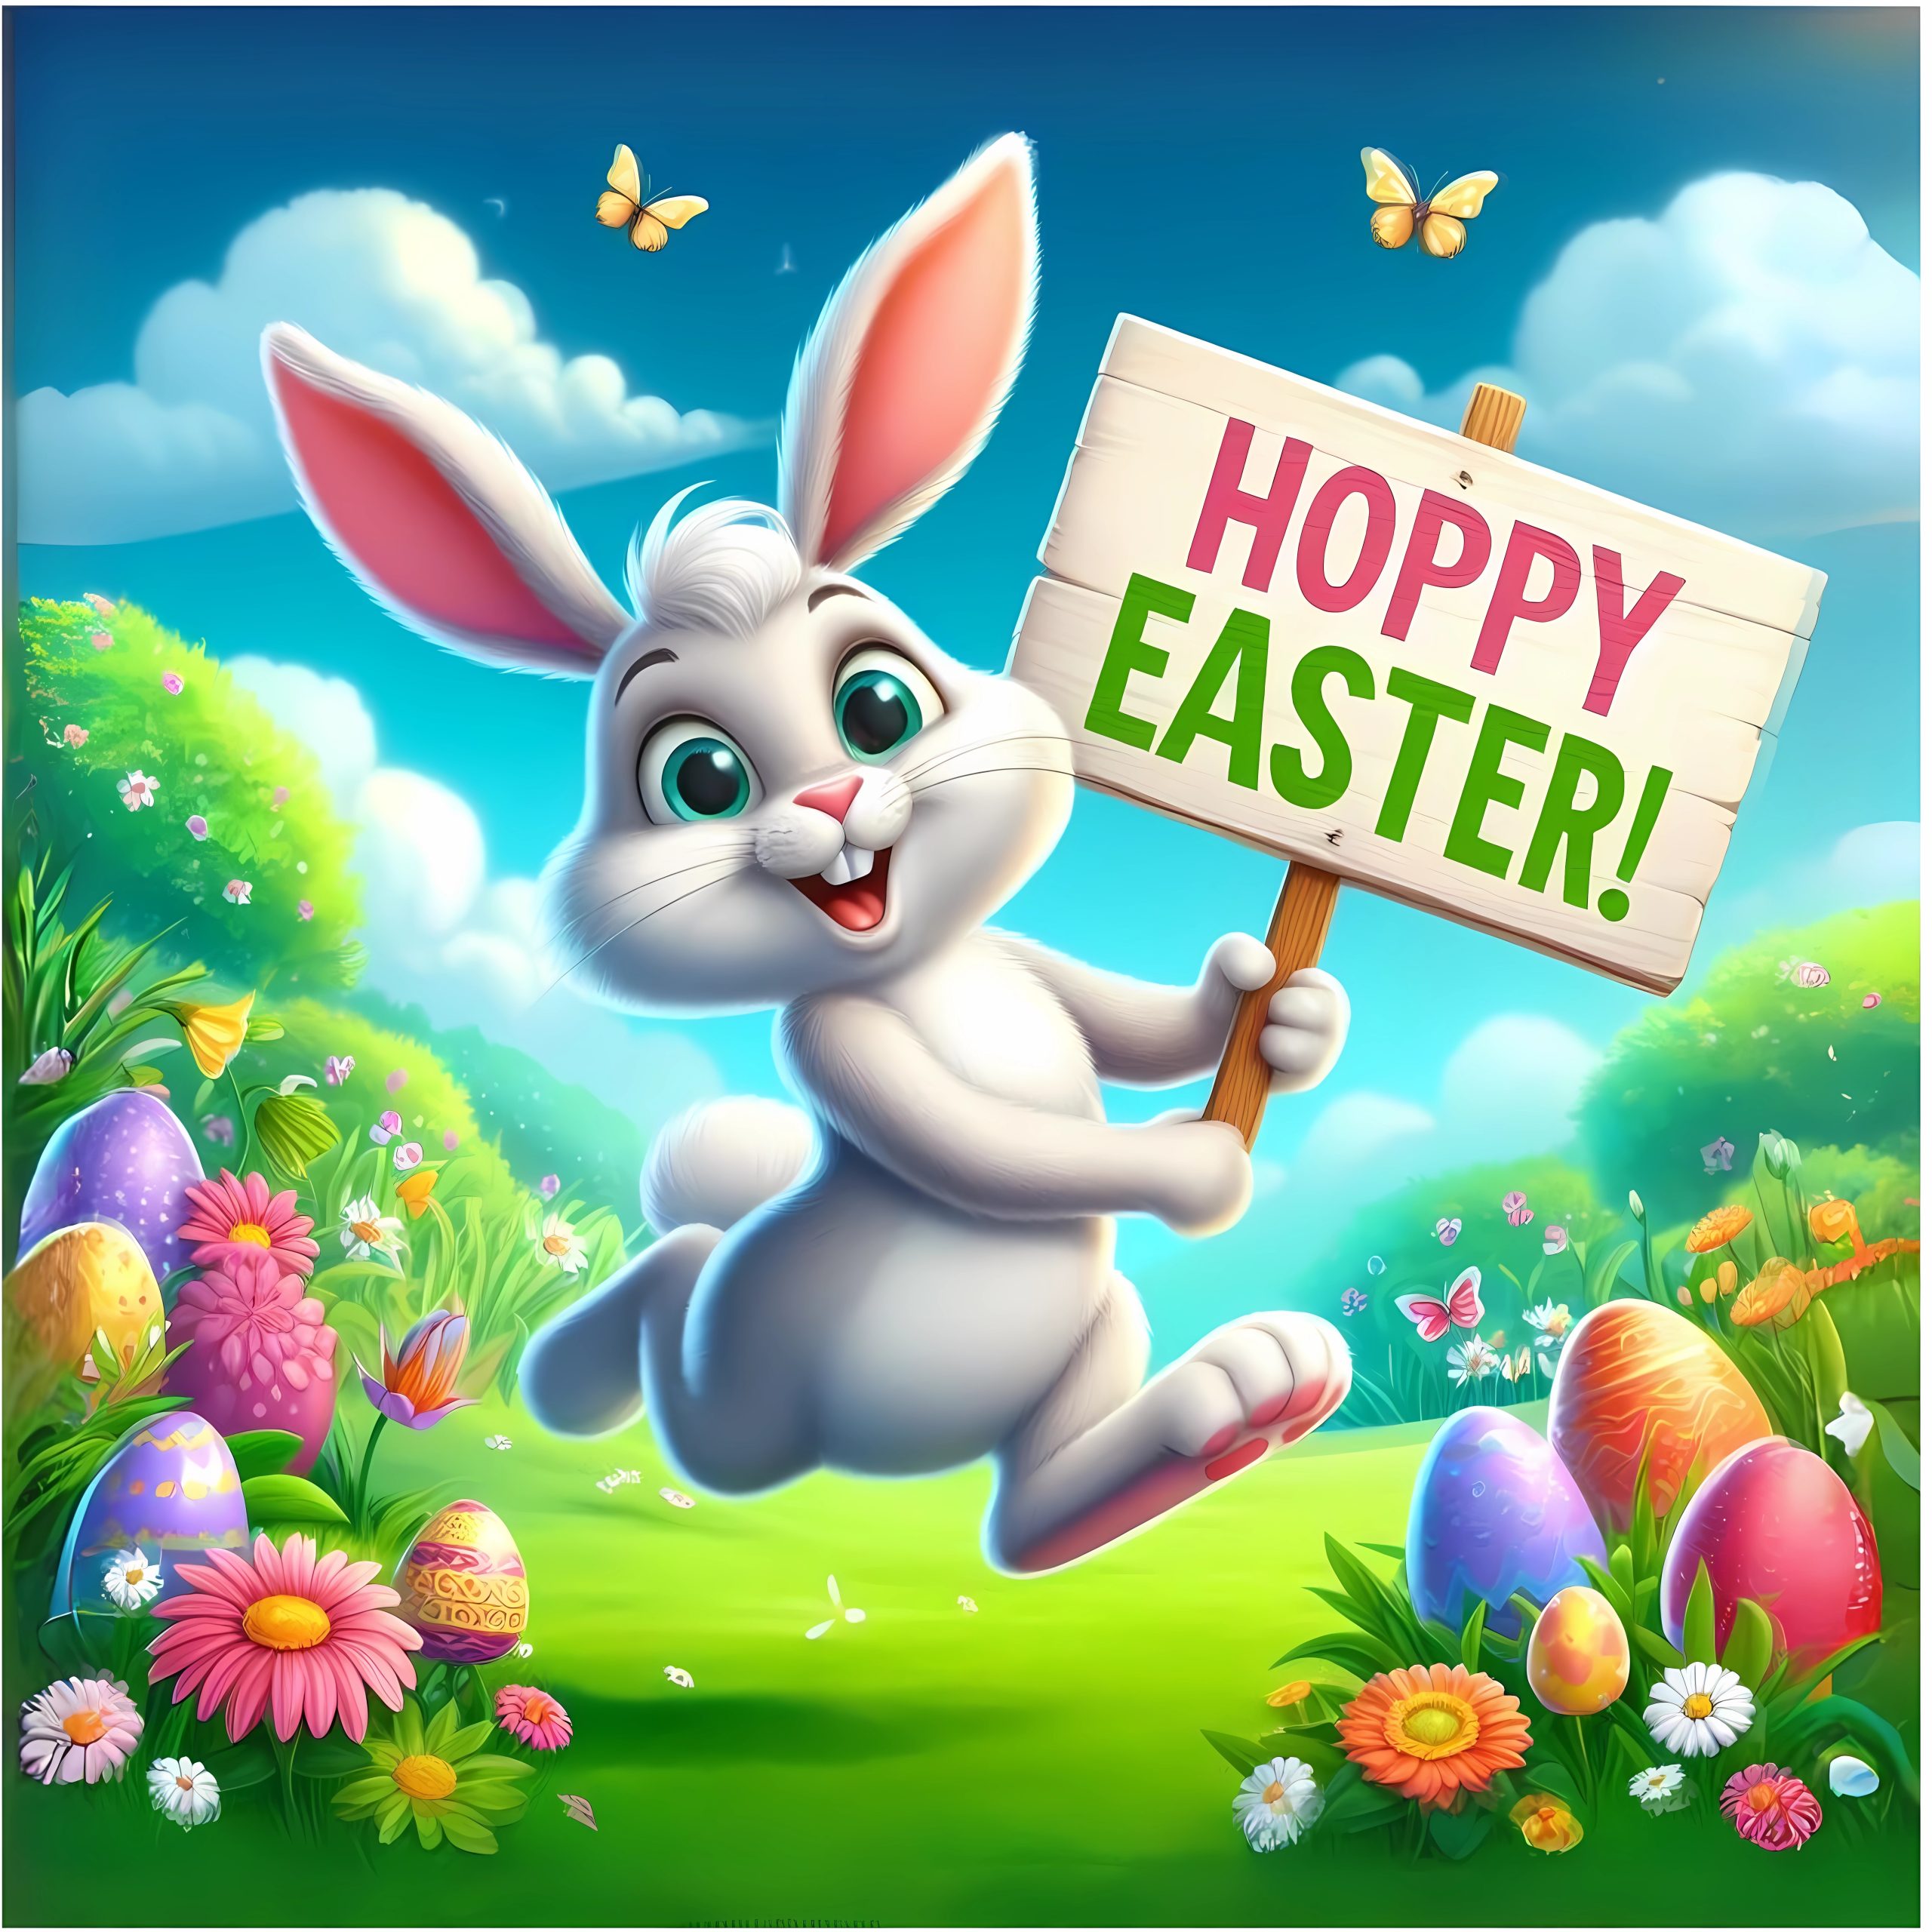 Hoppy Easter Image